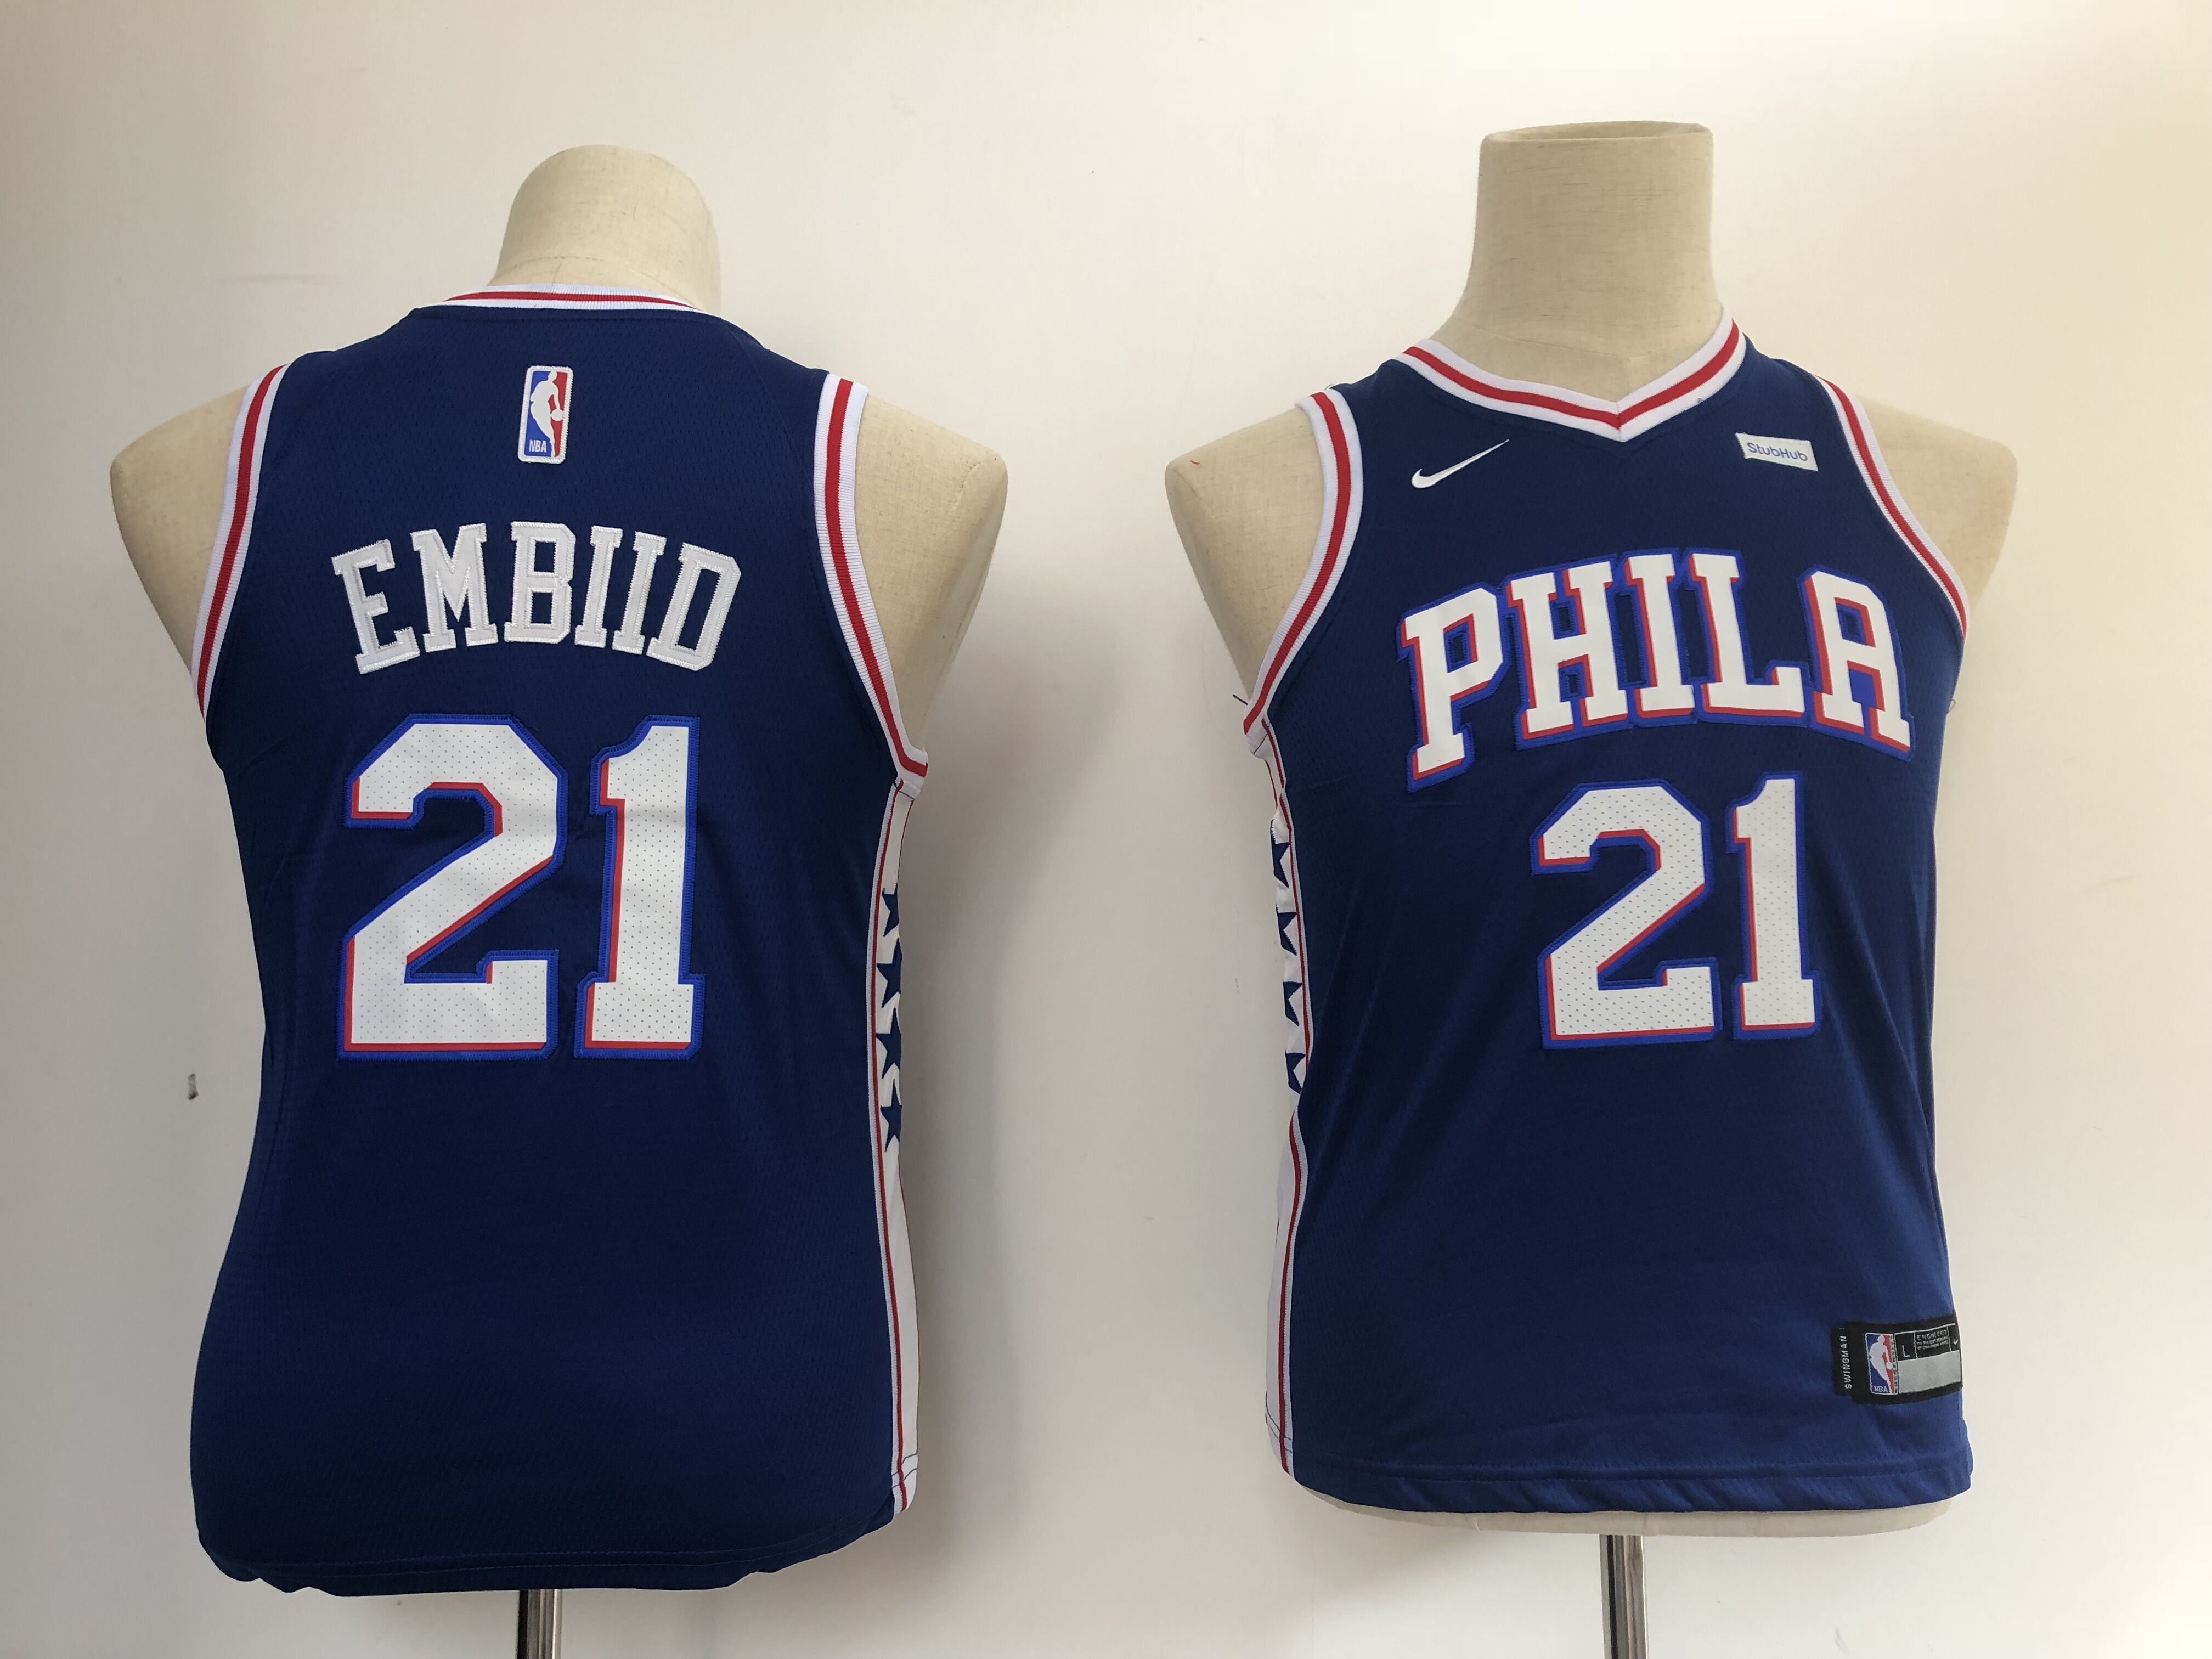 Youth Philadelphia 76ers 21 Embiid blue Nike NBA Jerseys